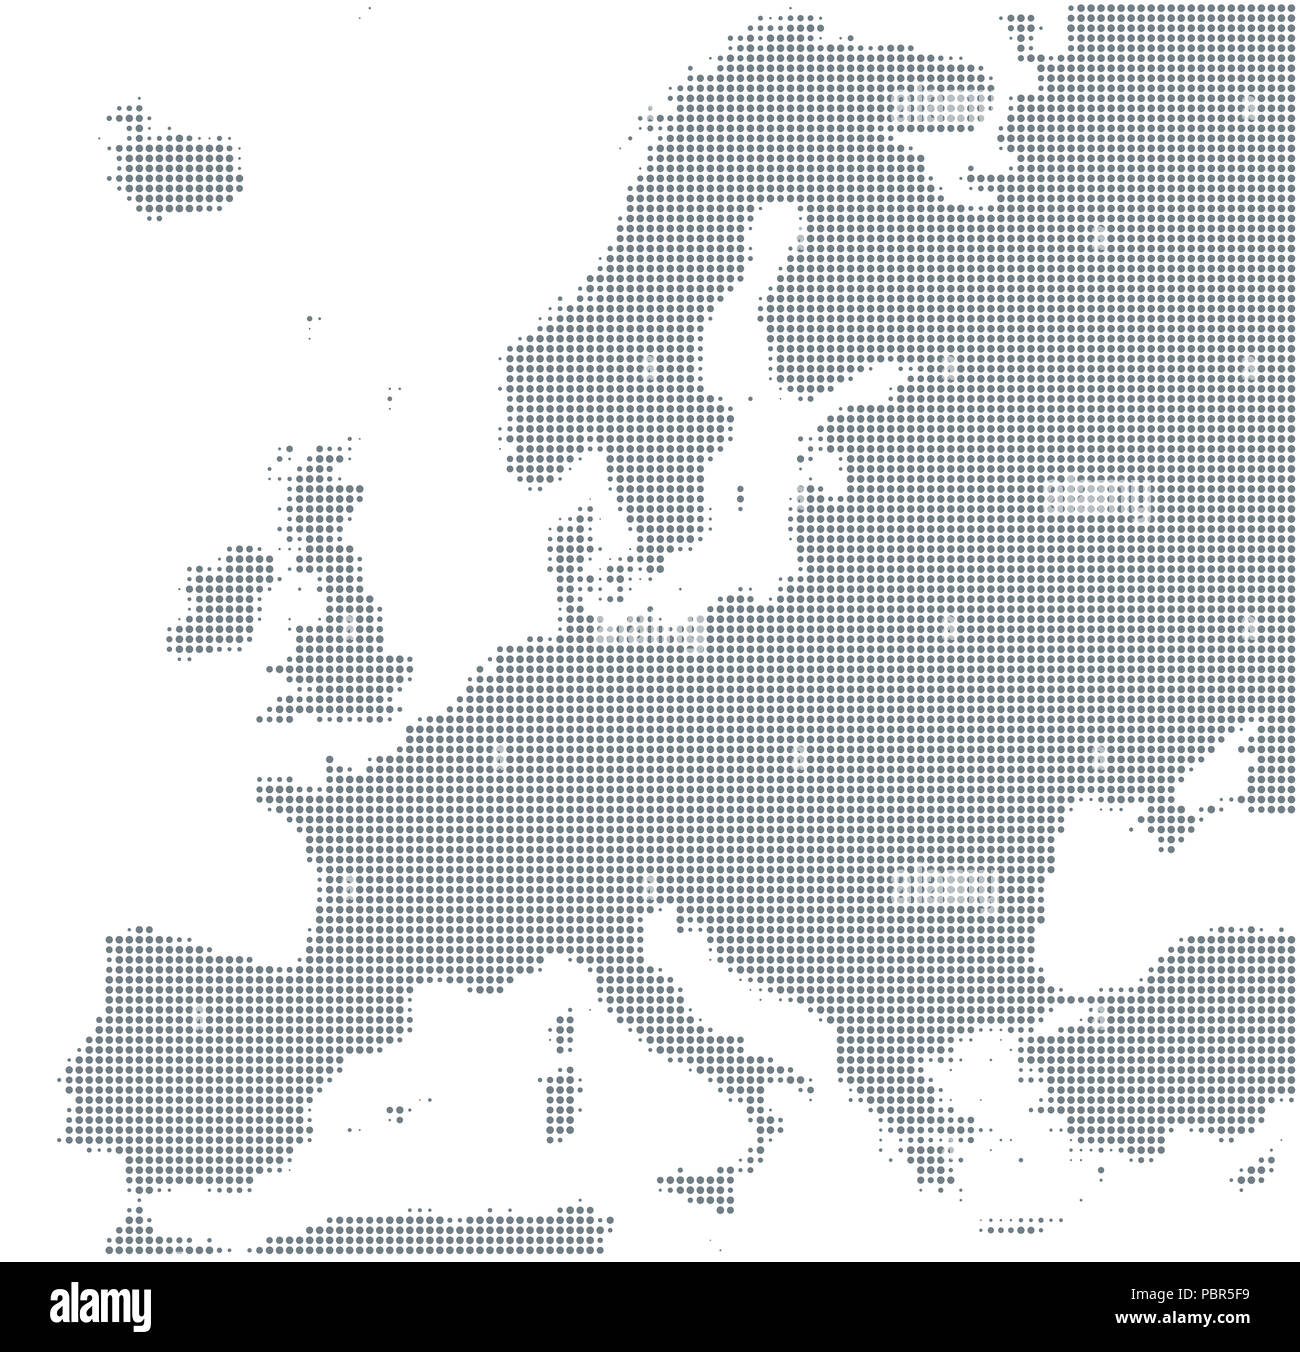 Silueta de Europa. Puntos de semitono de color gris, que varían en tamaño y espaciado. Mapa de Europa. Contorno punteado y la superficie debajo de la proyección Robinson. Foto de stock